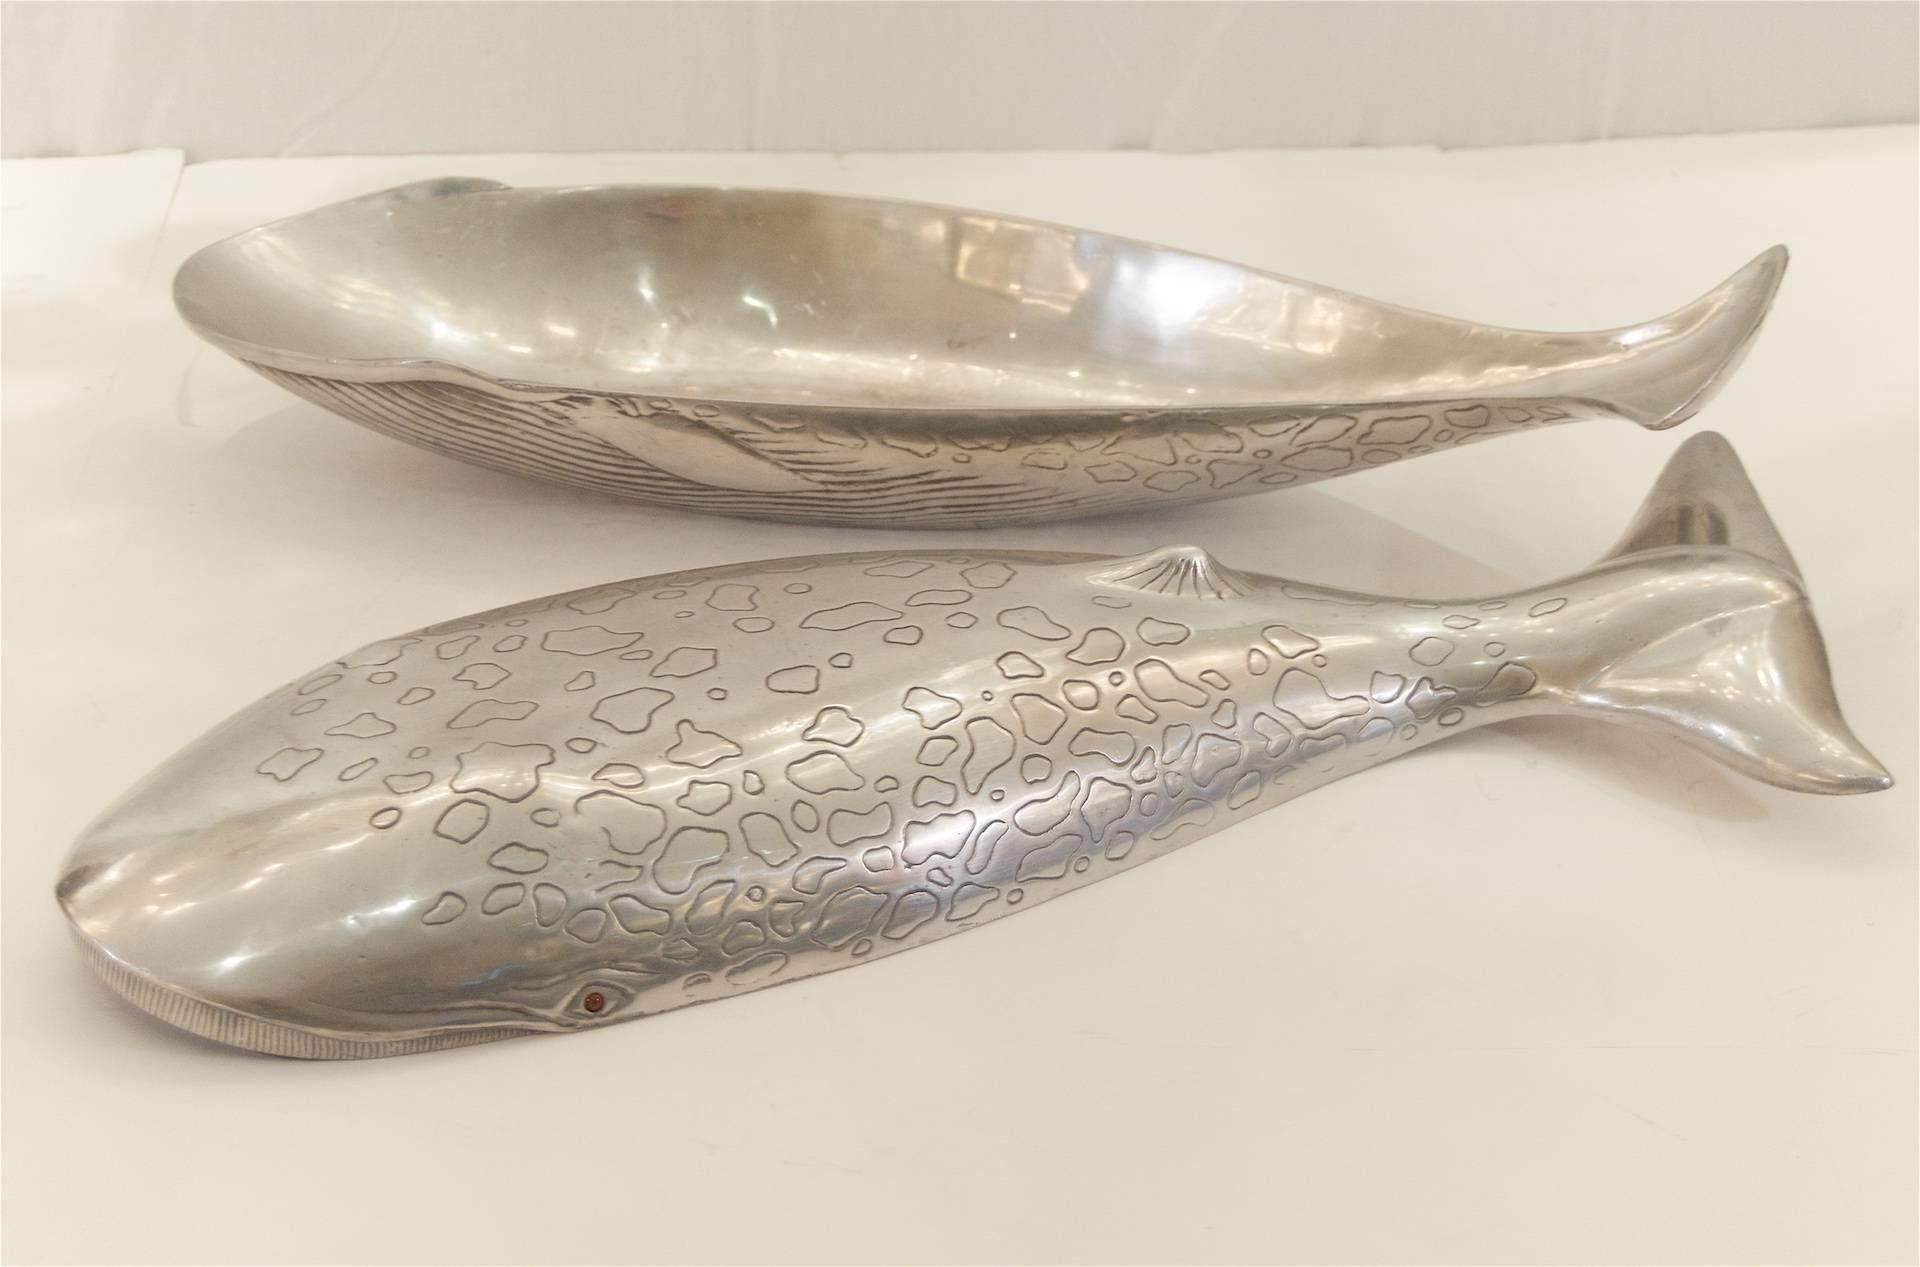 Aluminum Decorative Whale Bowl or Centrepiece